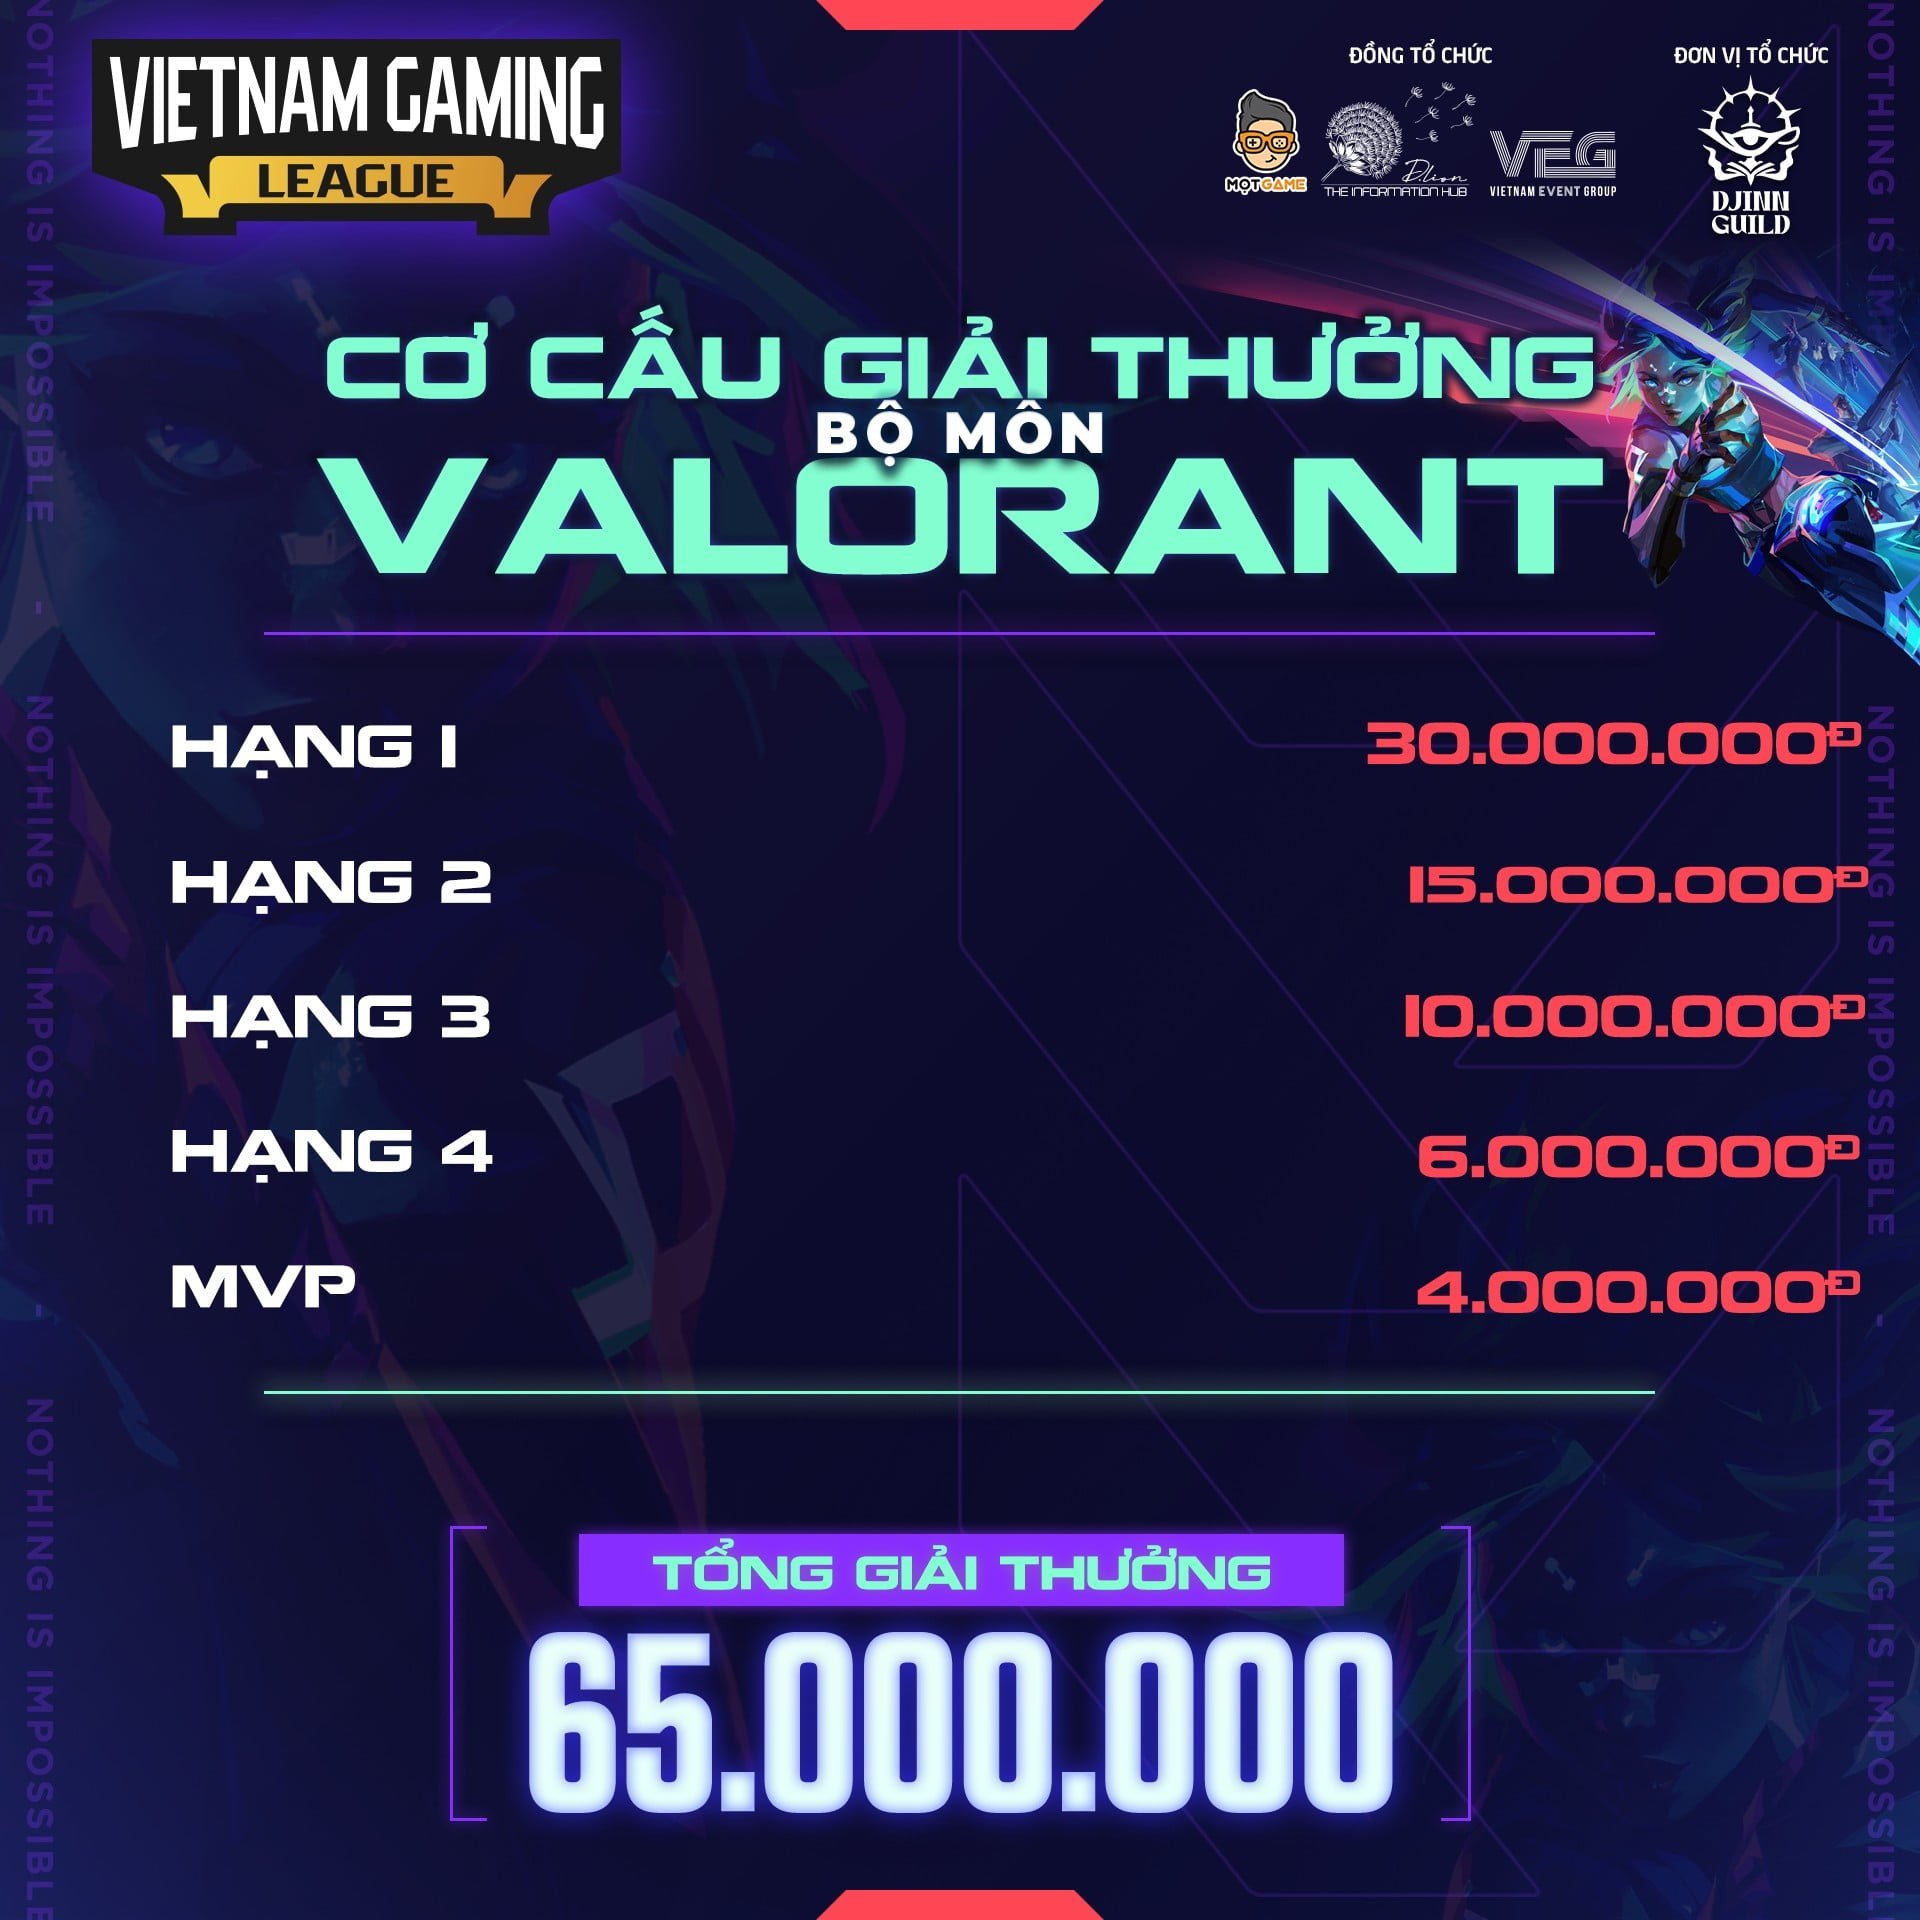 Vietnam Gaming League – Valorant Community Tournament 3 MMOSITE - Thông tin công nghệ, review, thủ thuật PC, gaming